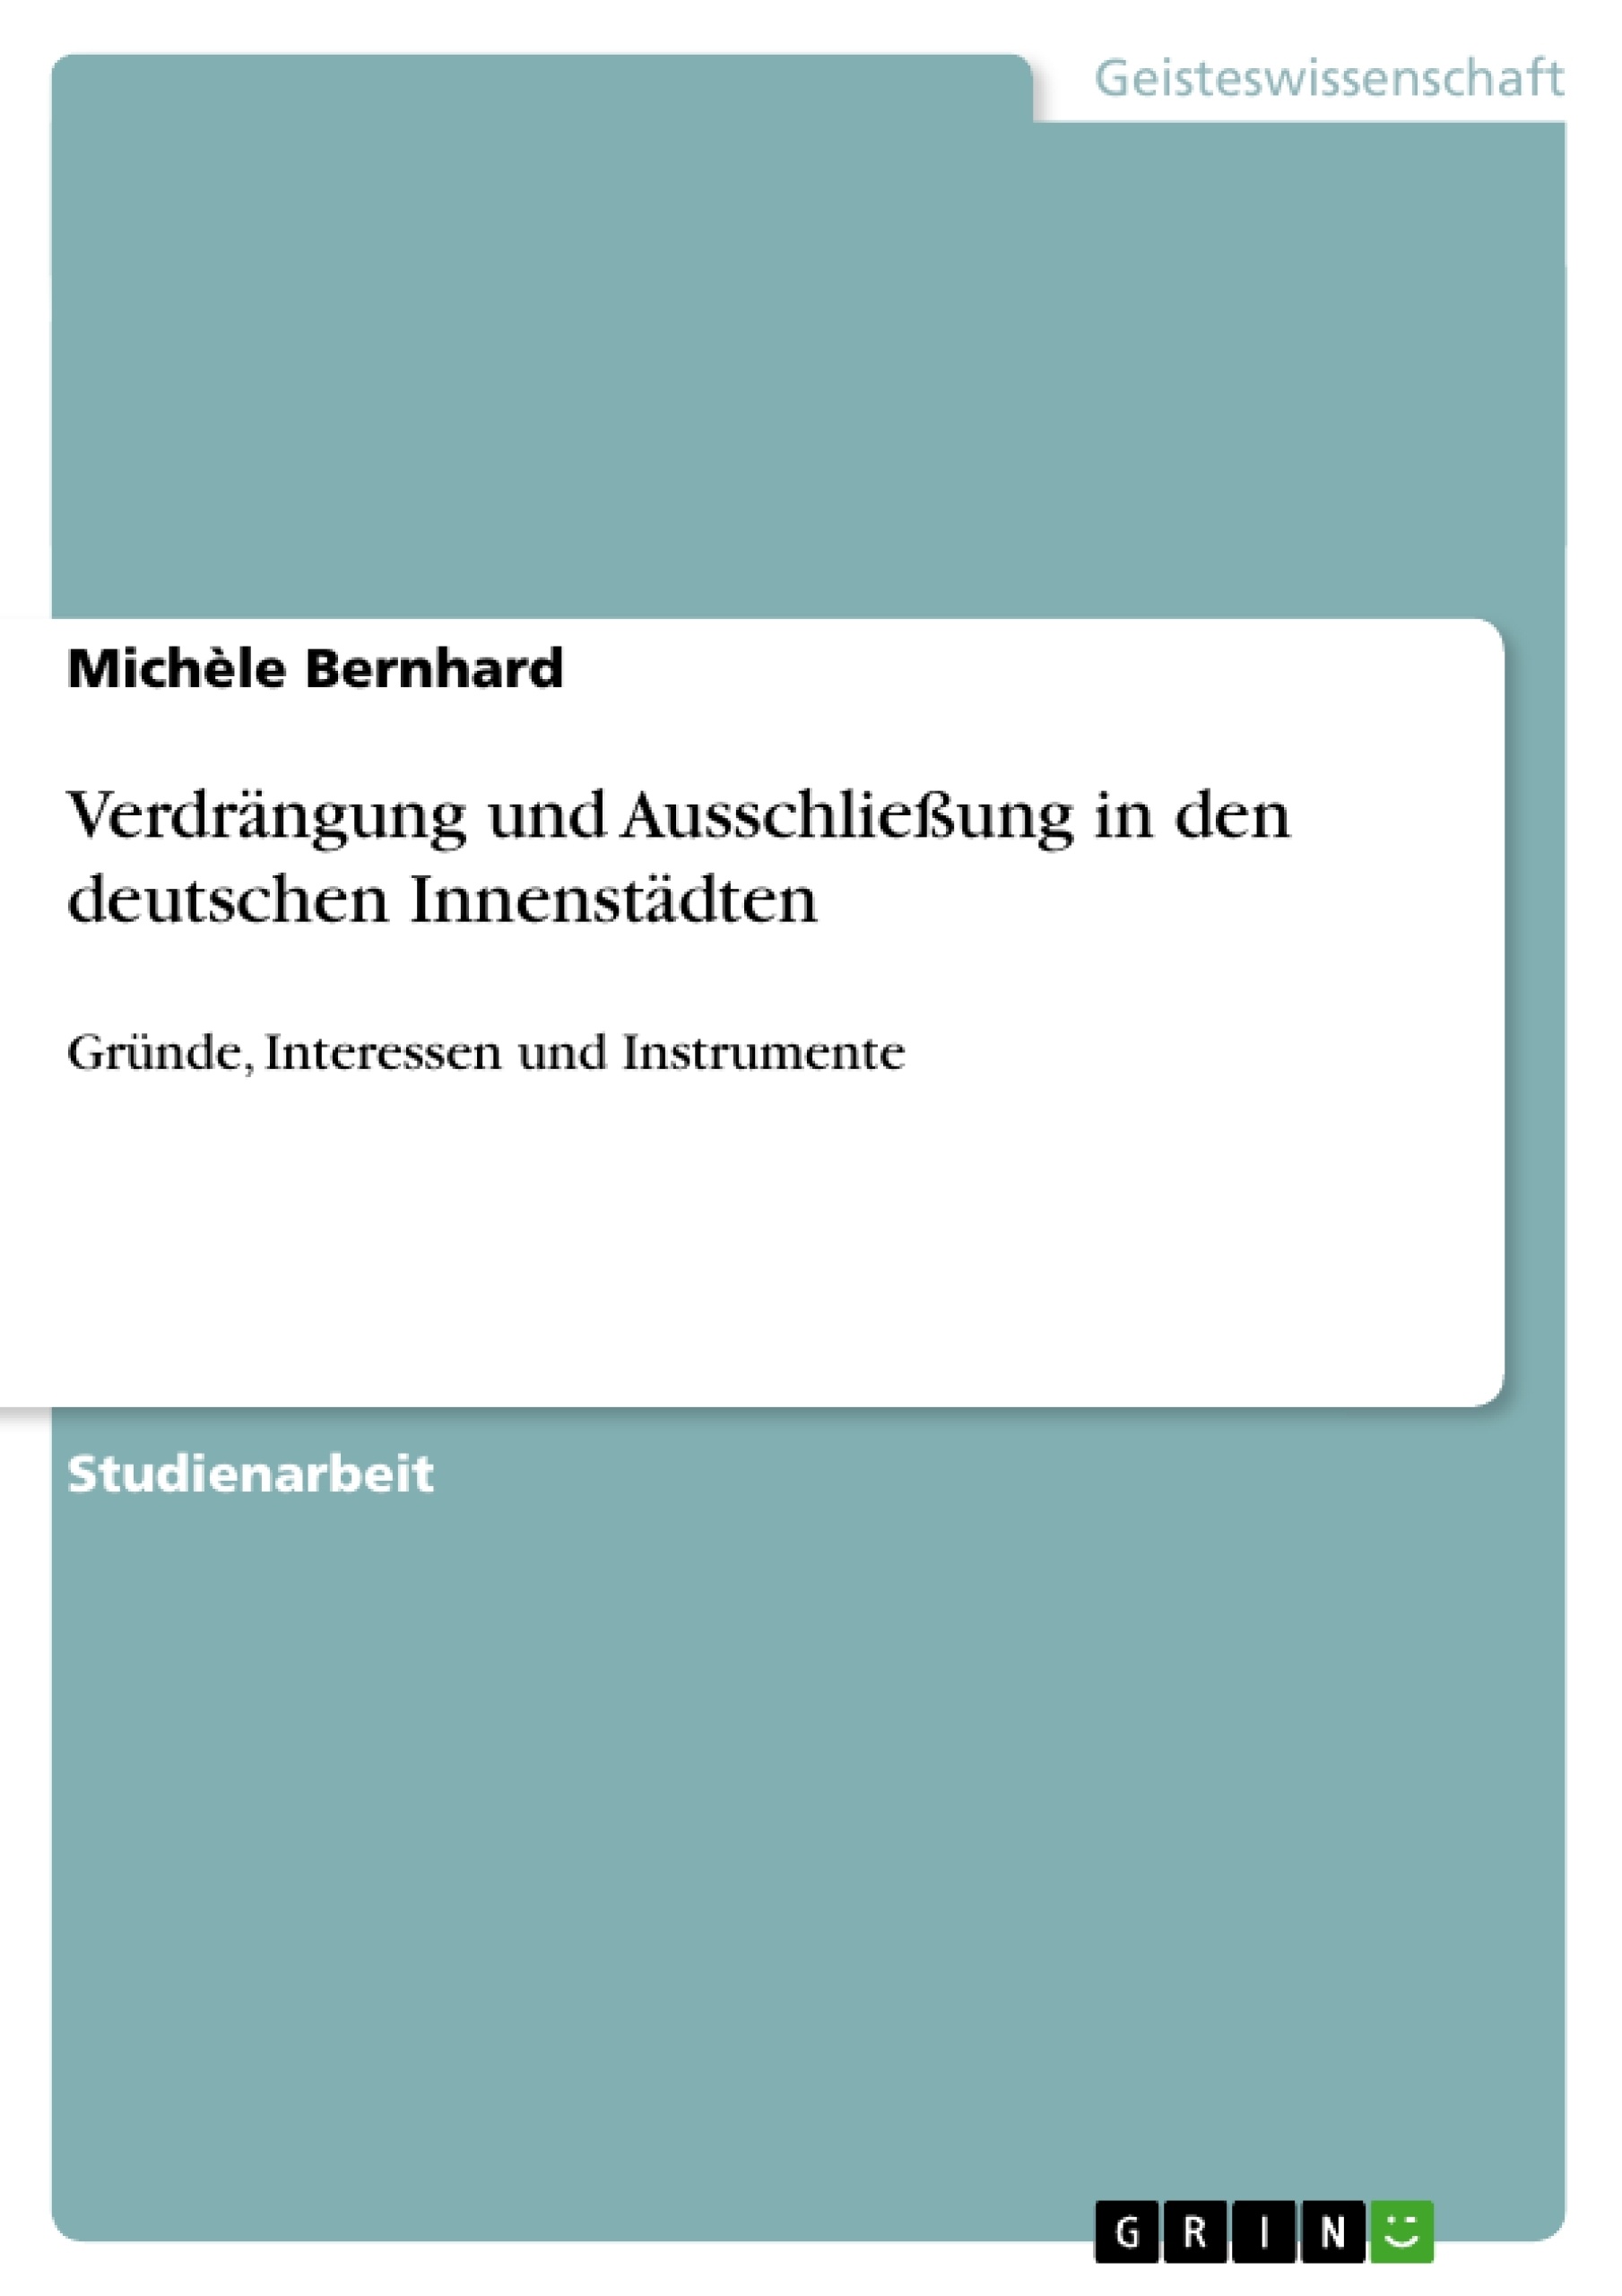 Título: Verdrängung und Ausschließung in den deutschen Innenstädten  